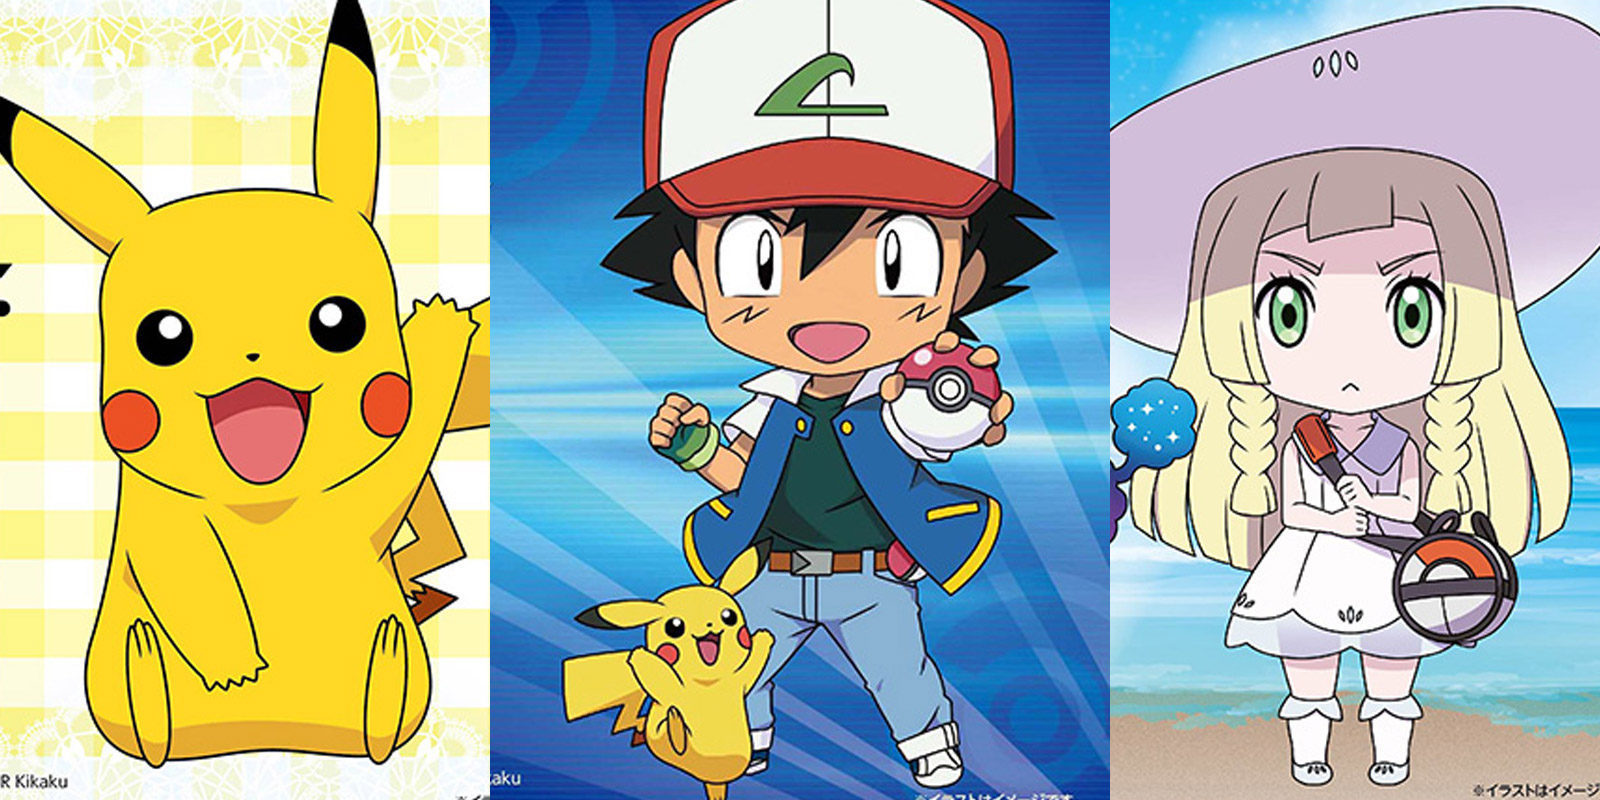 Nendoroid de Pokémon anunciadas en el WonFes 2017 Winter: Pikachu, Ash y Lylia